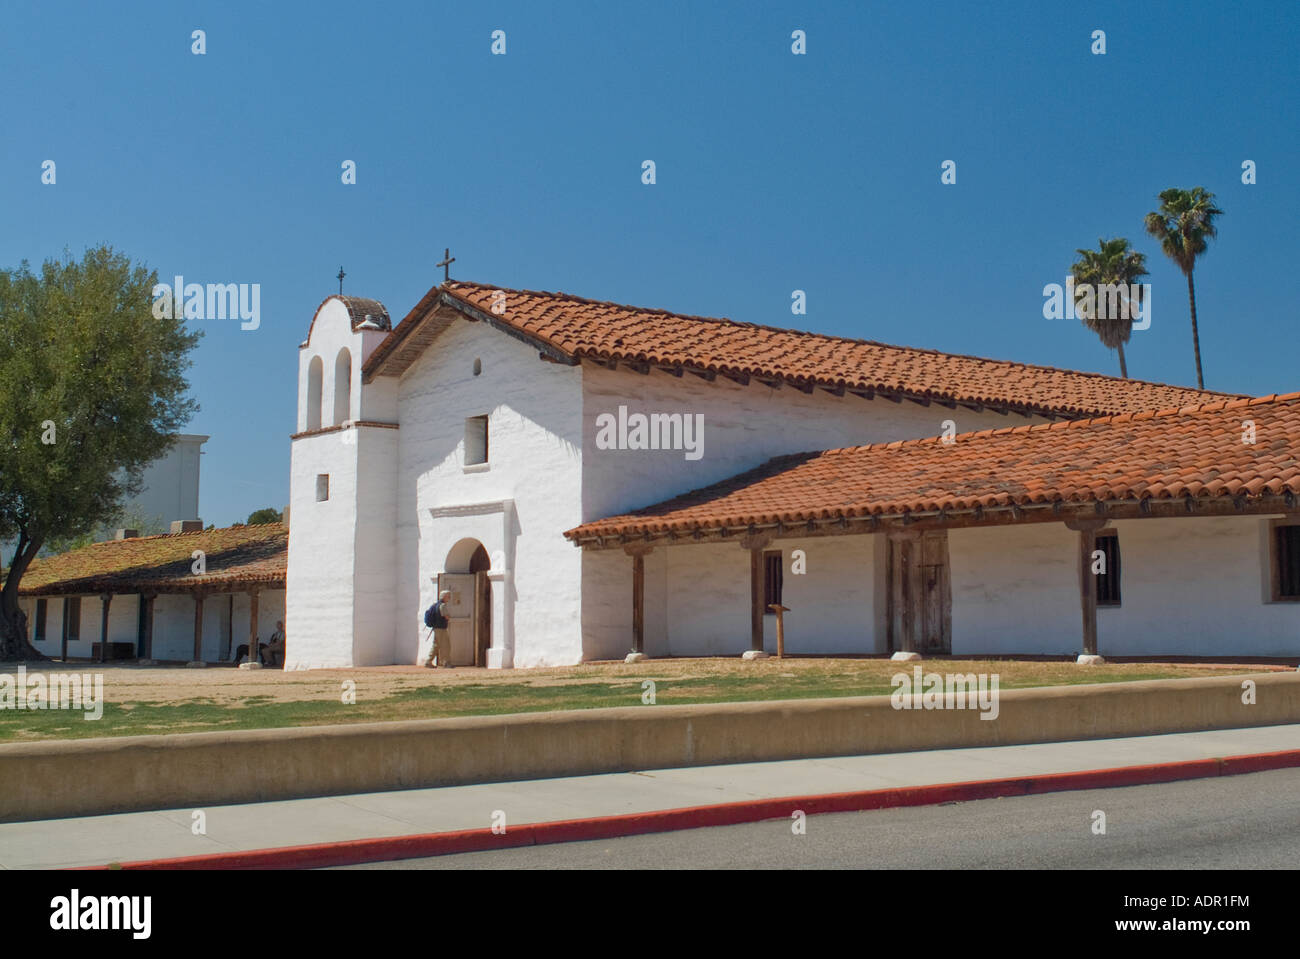 Site de Presidio royale espagnole de Santa Barabara Californie Banque D'Images